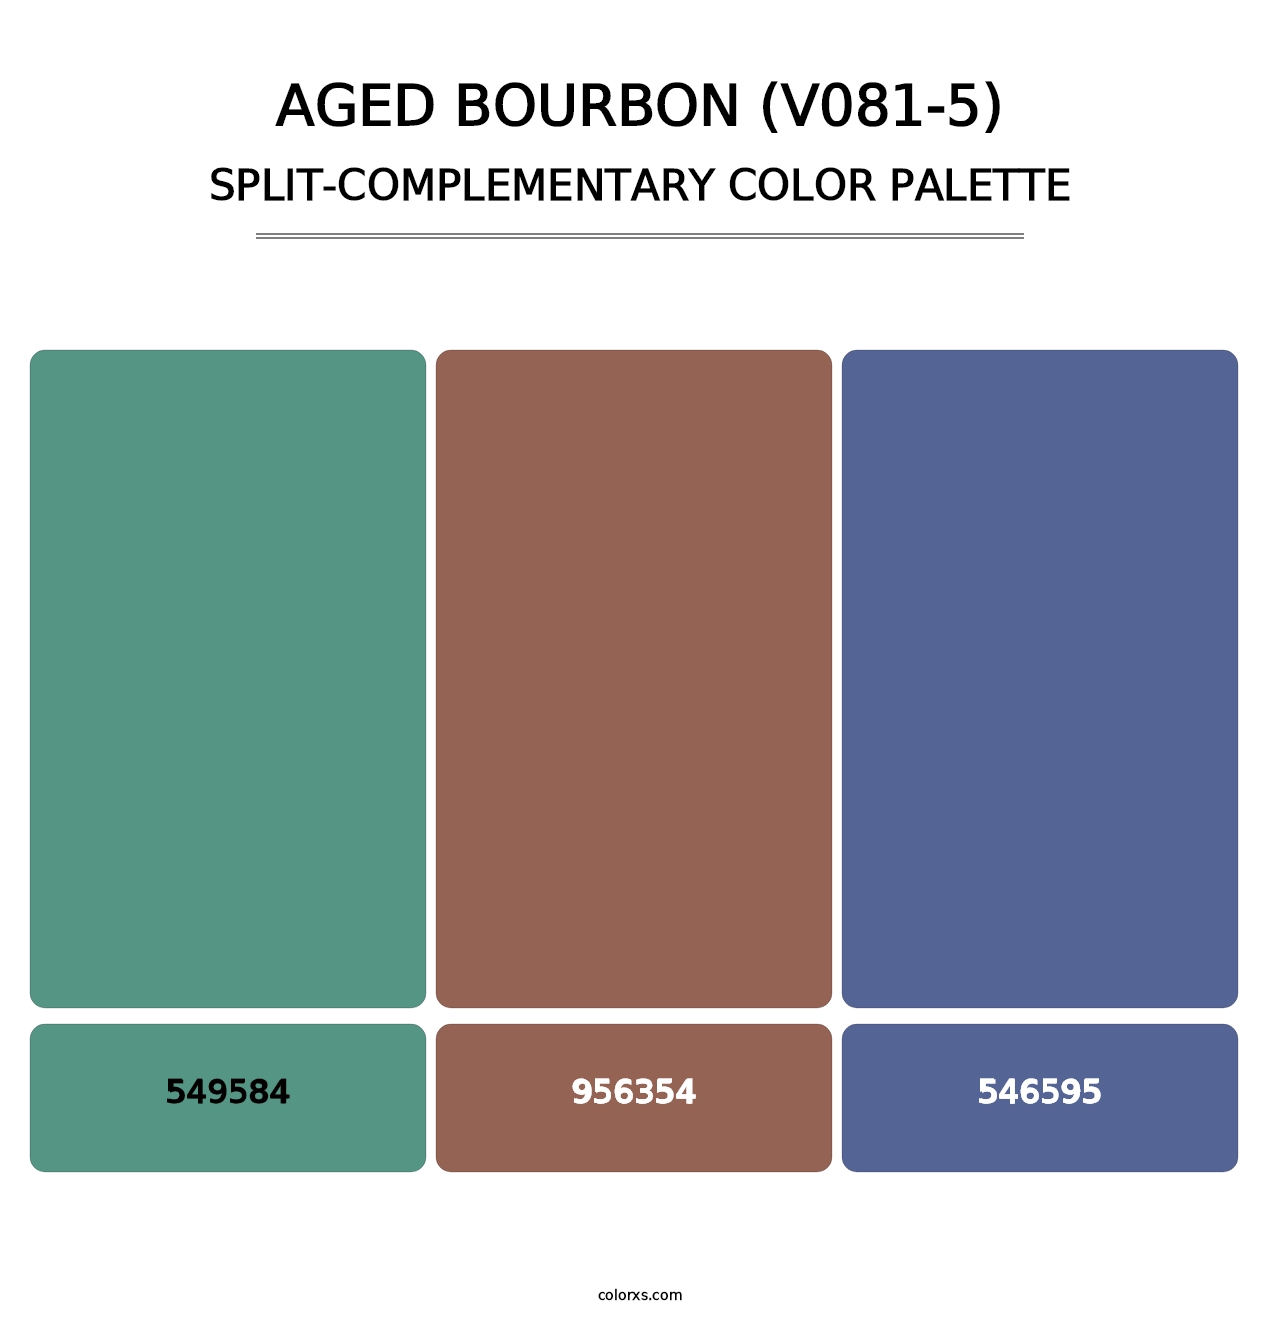 Aged Bourbon (V081-5) - Split-Complementary Color Palette